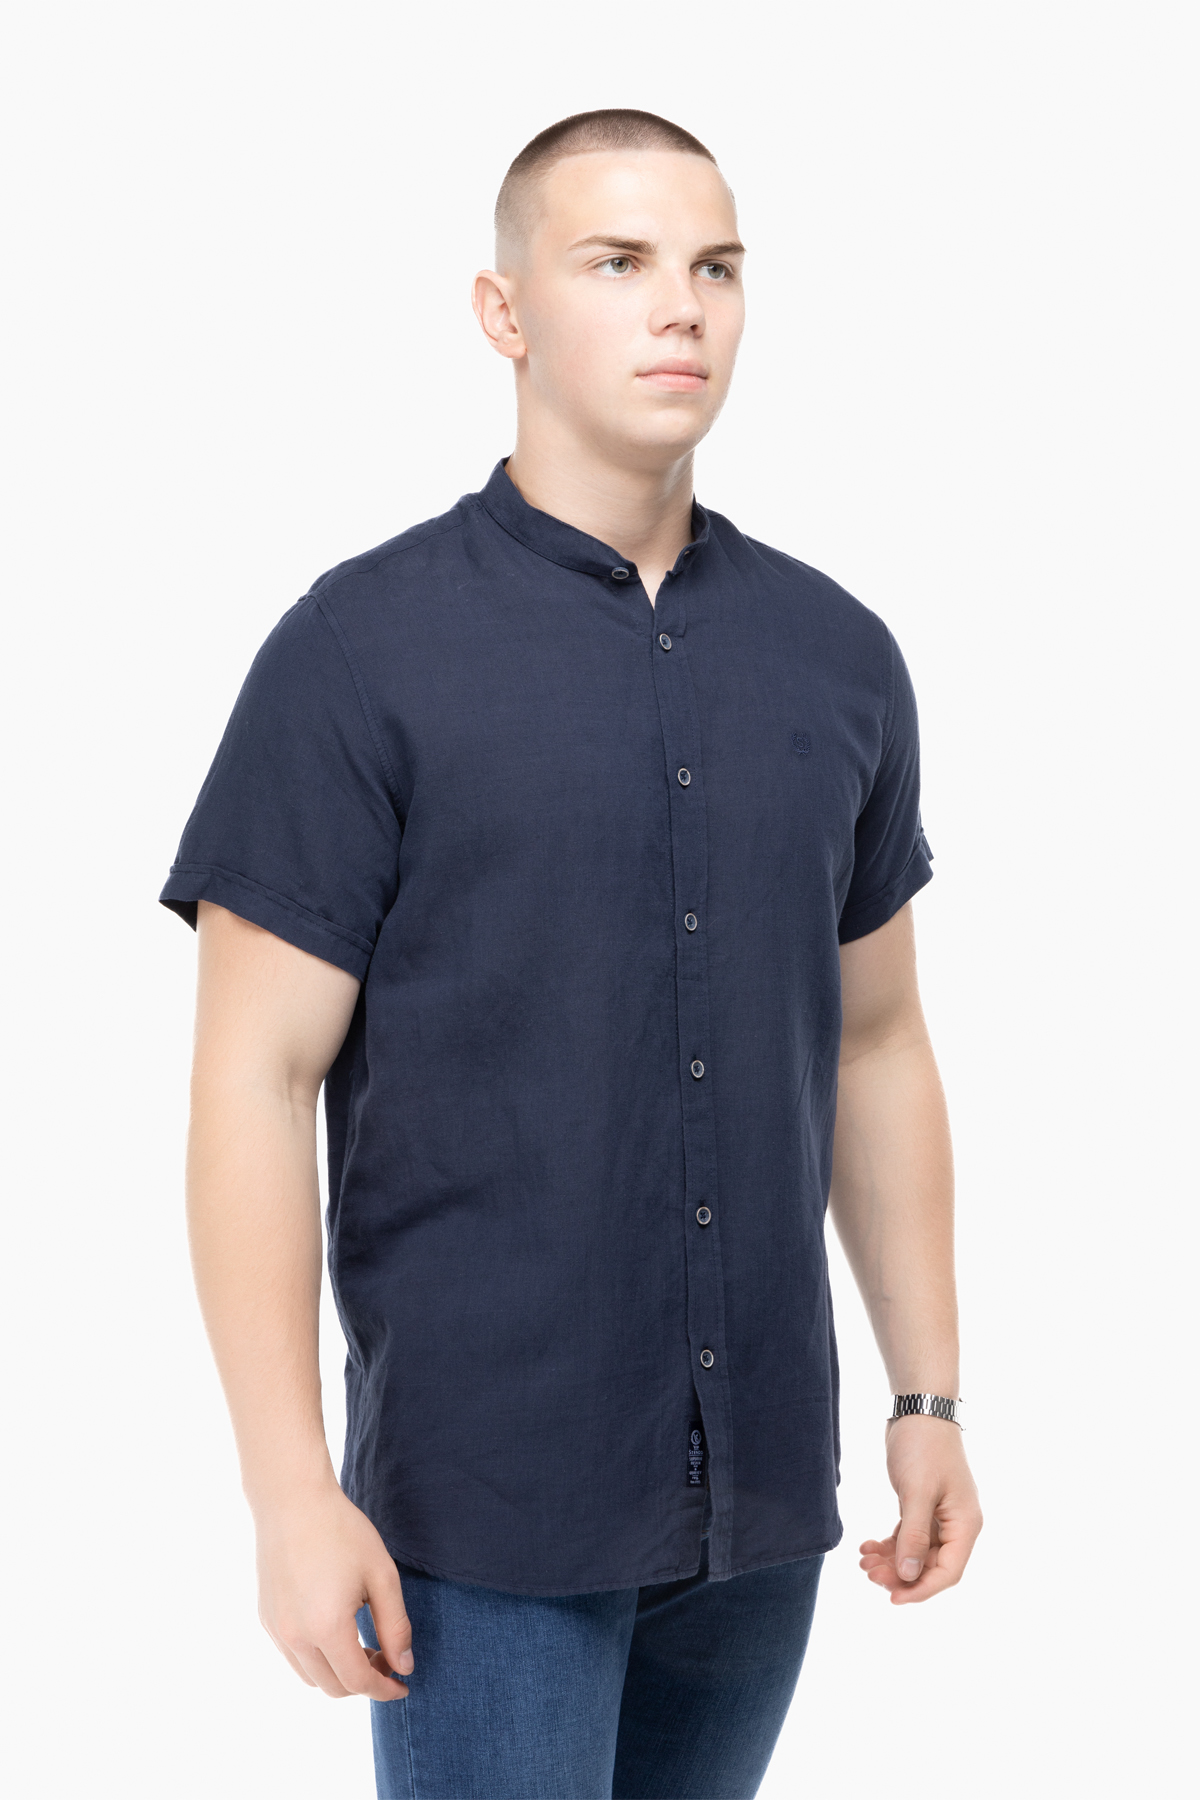 Рубашка классическая однотонная мужская Stendo 14212 L Темно-синий (2000989627425)